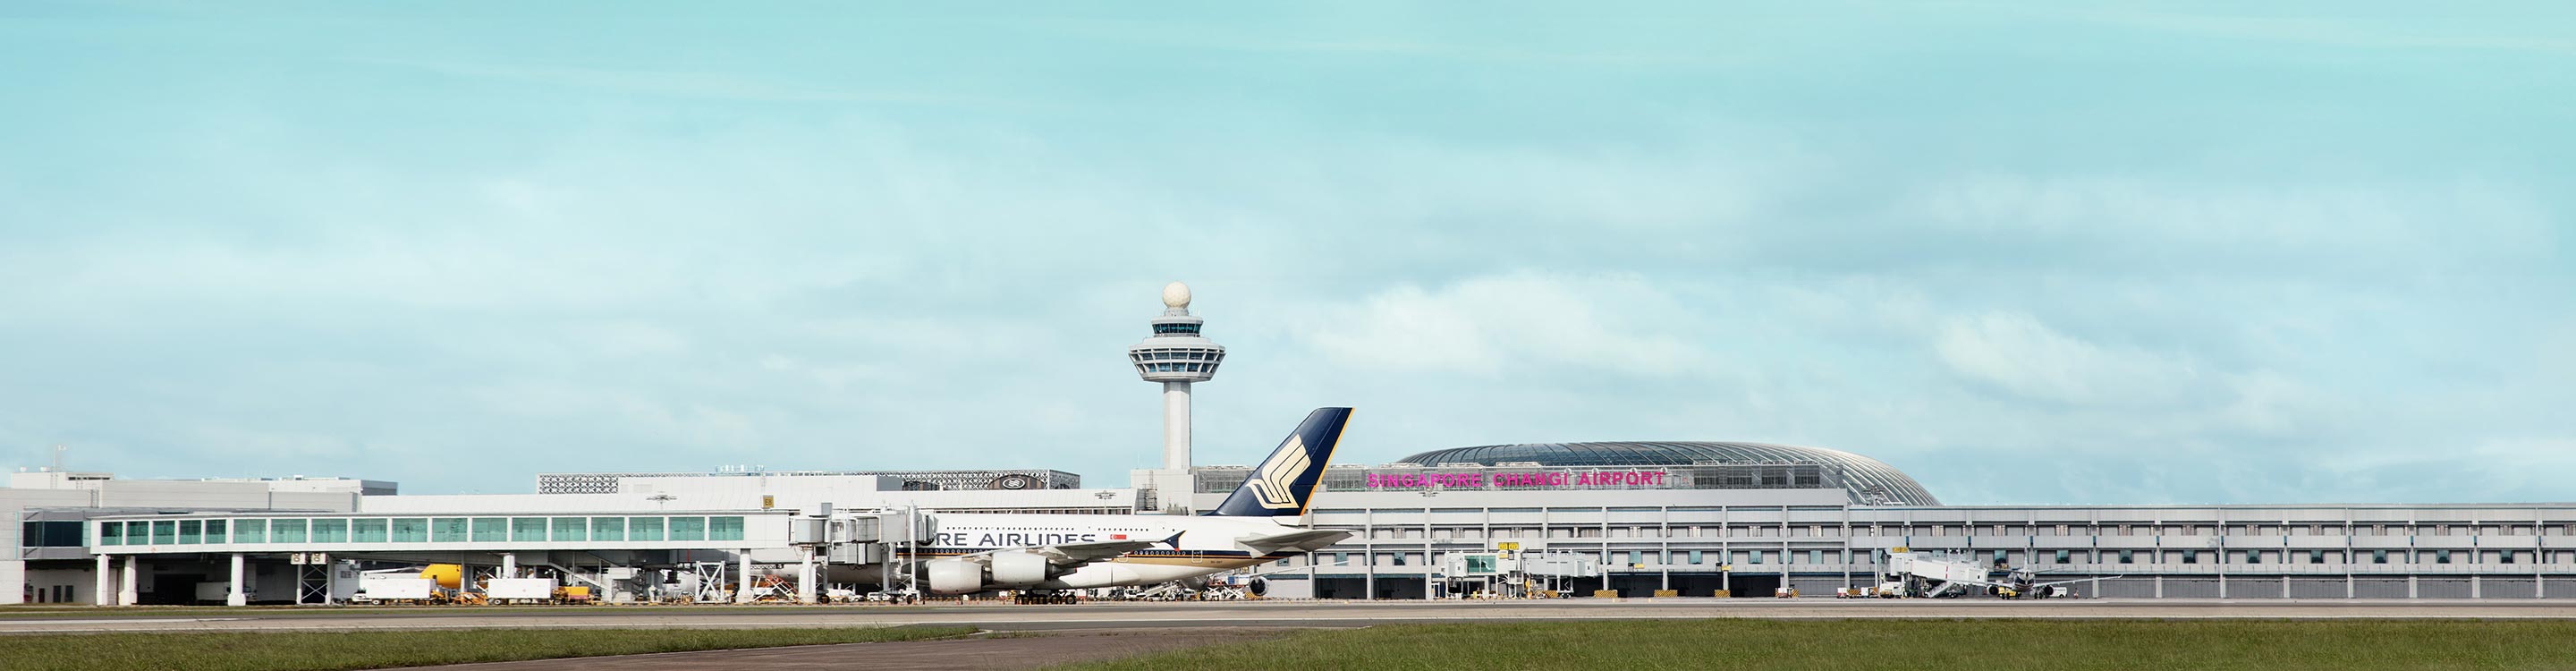 Changi Airport Group,Changi Airport Group